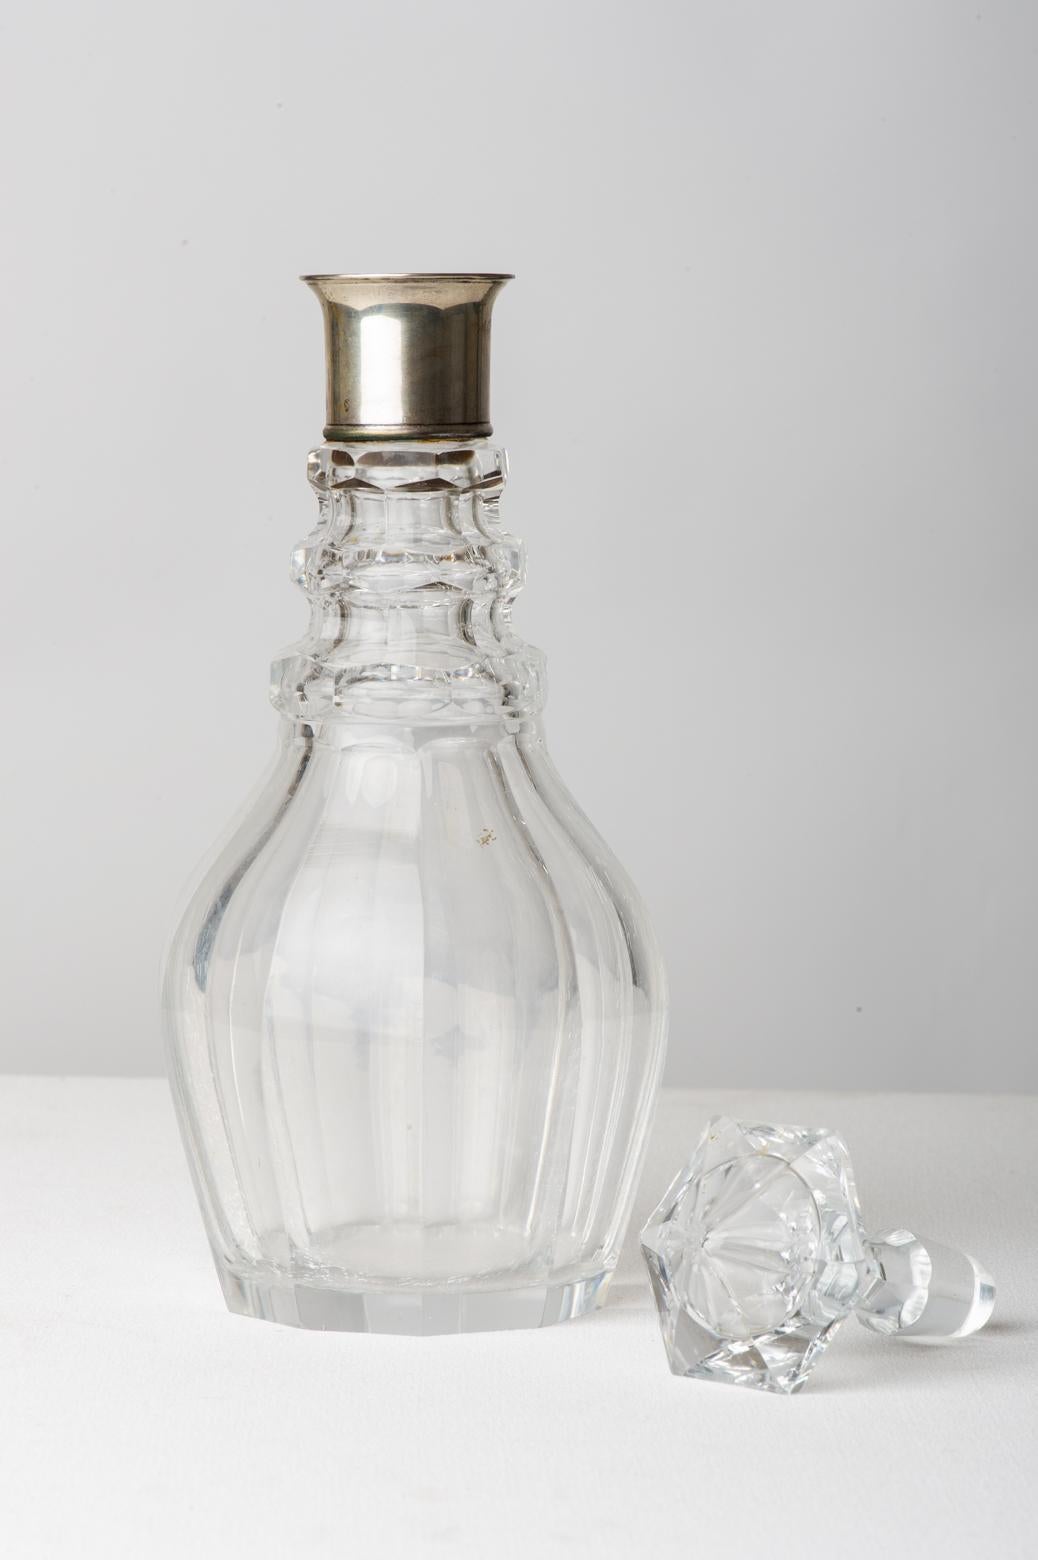 Elegante Karaffe aus altem Kristall mit silbernem Hals: perfekt für Ihre Barecke. Eine Idee auch für ein Geschenk.
 


ref O/1959-2 